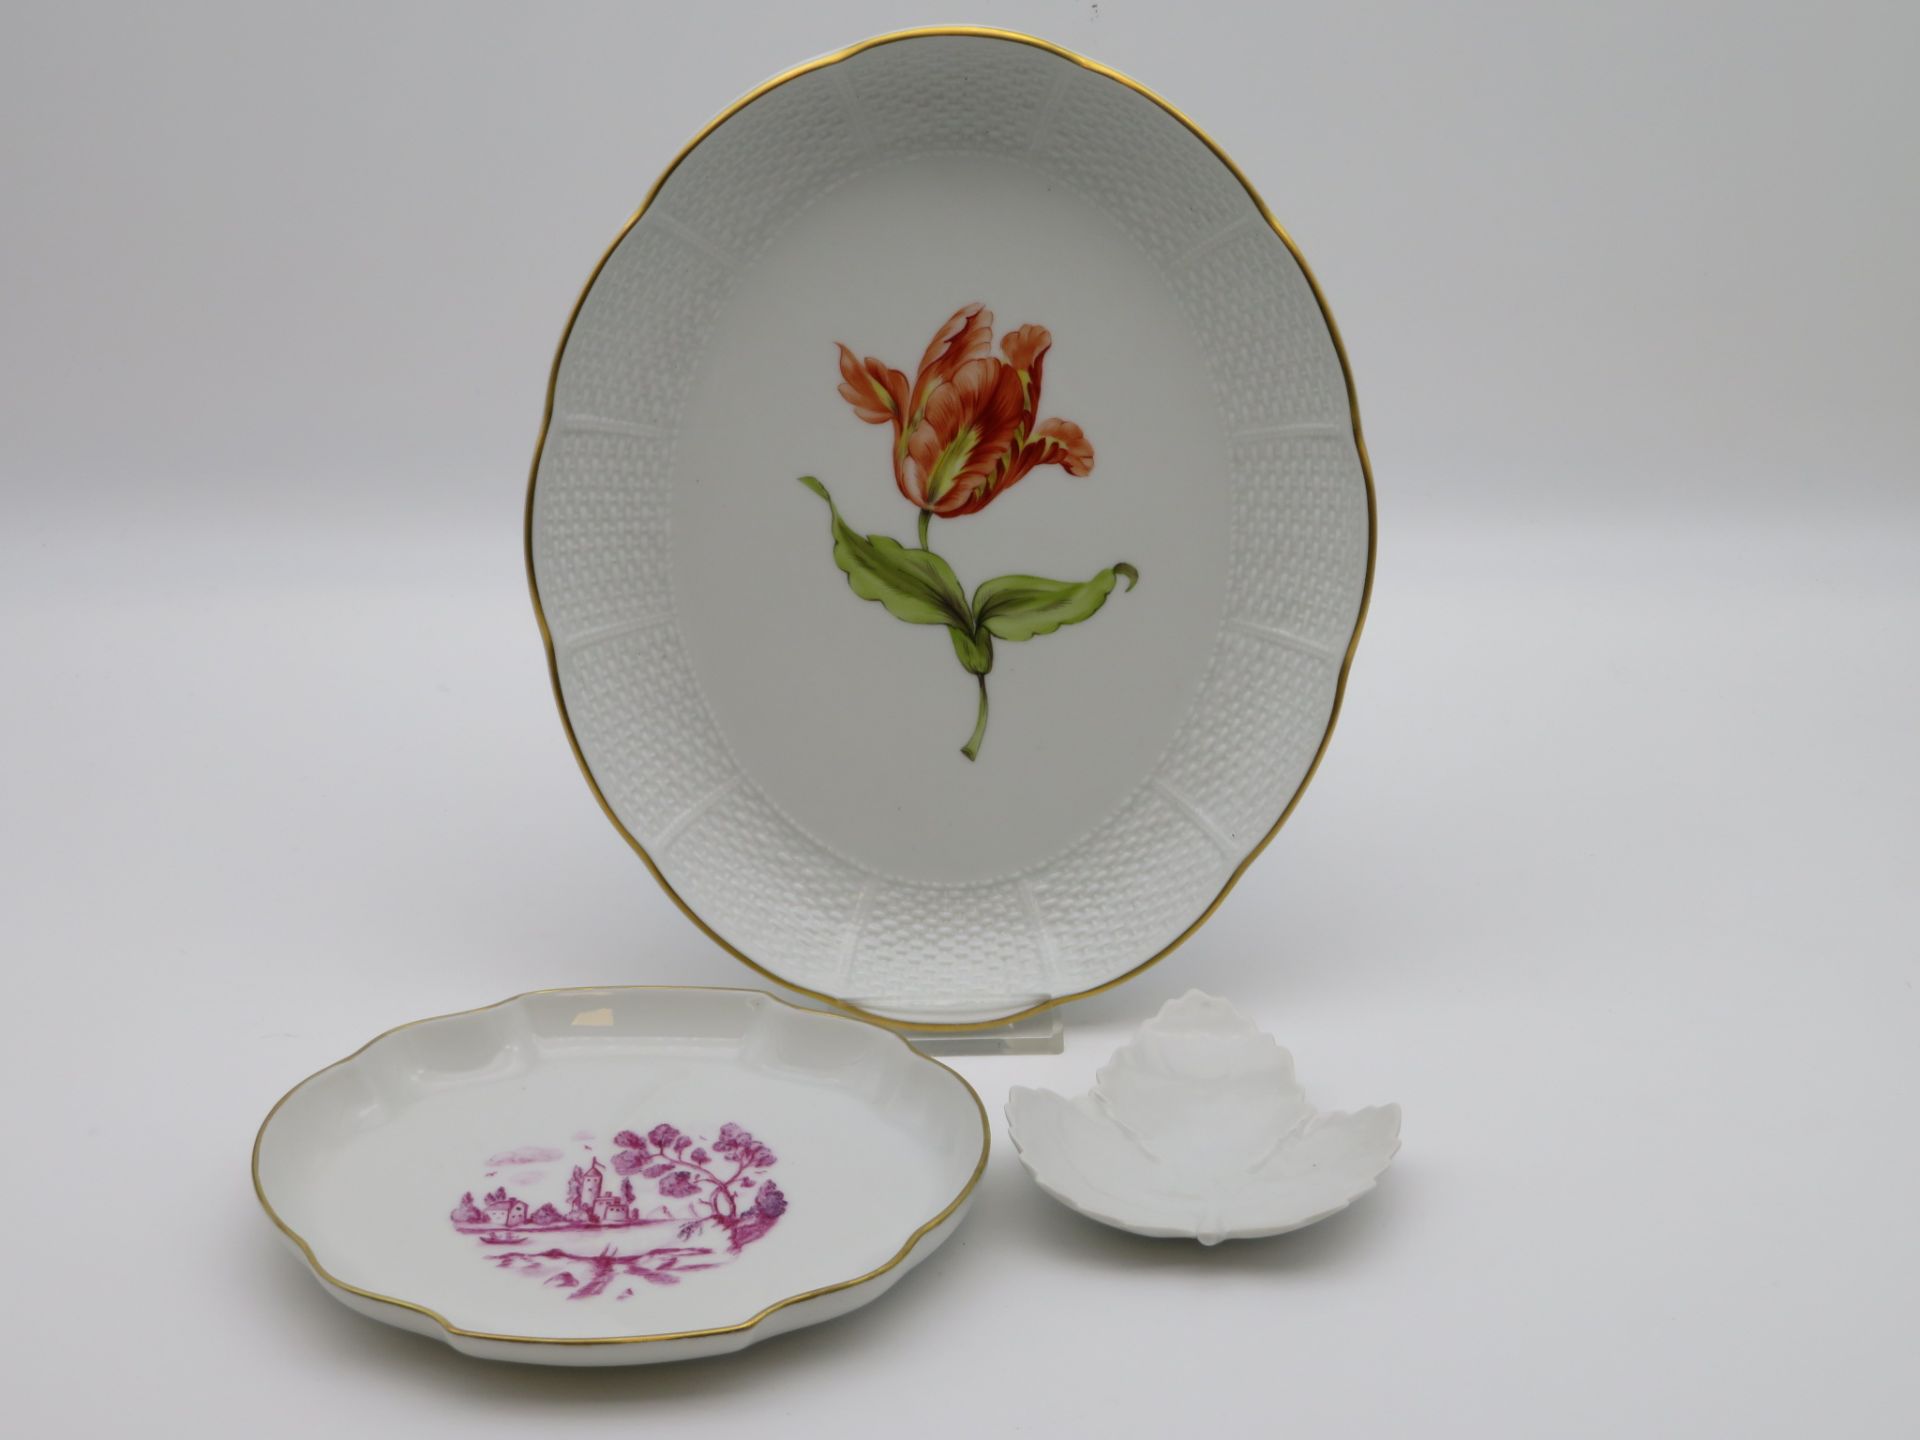 Platte, Schälchen und Blattschale, Ludwigsburg, Weißporzellan, 1 x mit polychromer Blütenmalerei, 1